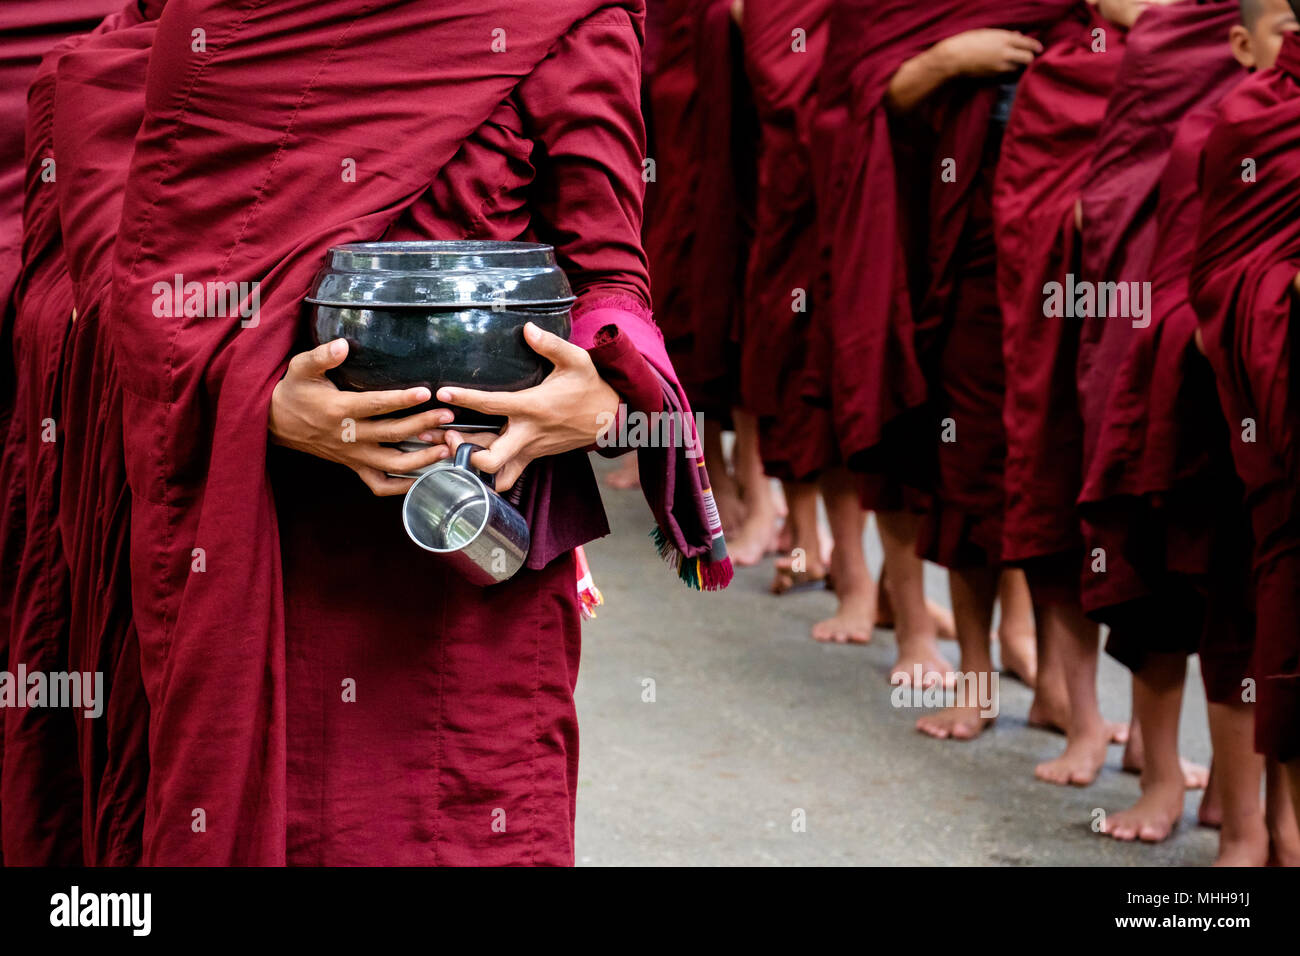 Dettaglio dei monaci buddisti si affollano nelle vesti di colore rosso e la persona che detiene una ciotola e cup Foto Stock